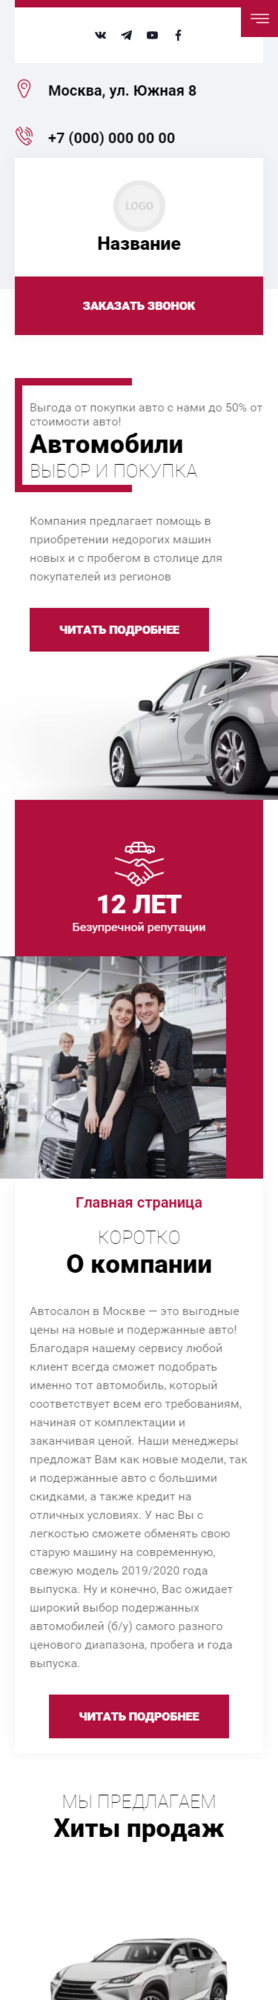 Готовый Сайт-Бизнес № 3589310 - Сайт Автосалона, продажа автомобилей (Мобильная версия)